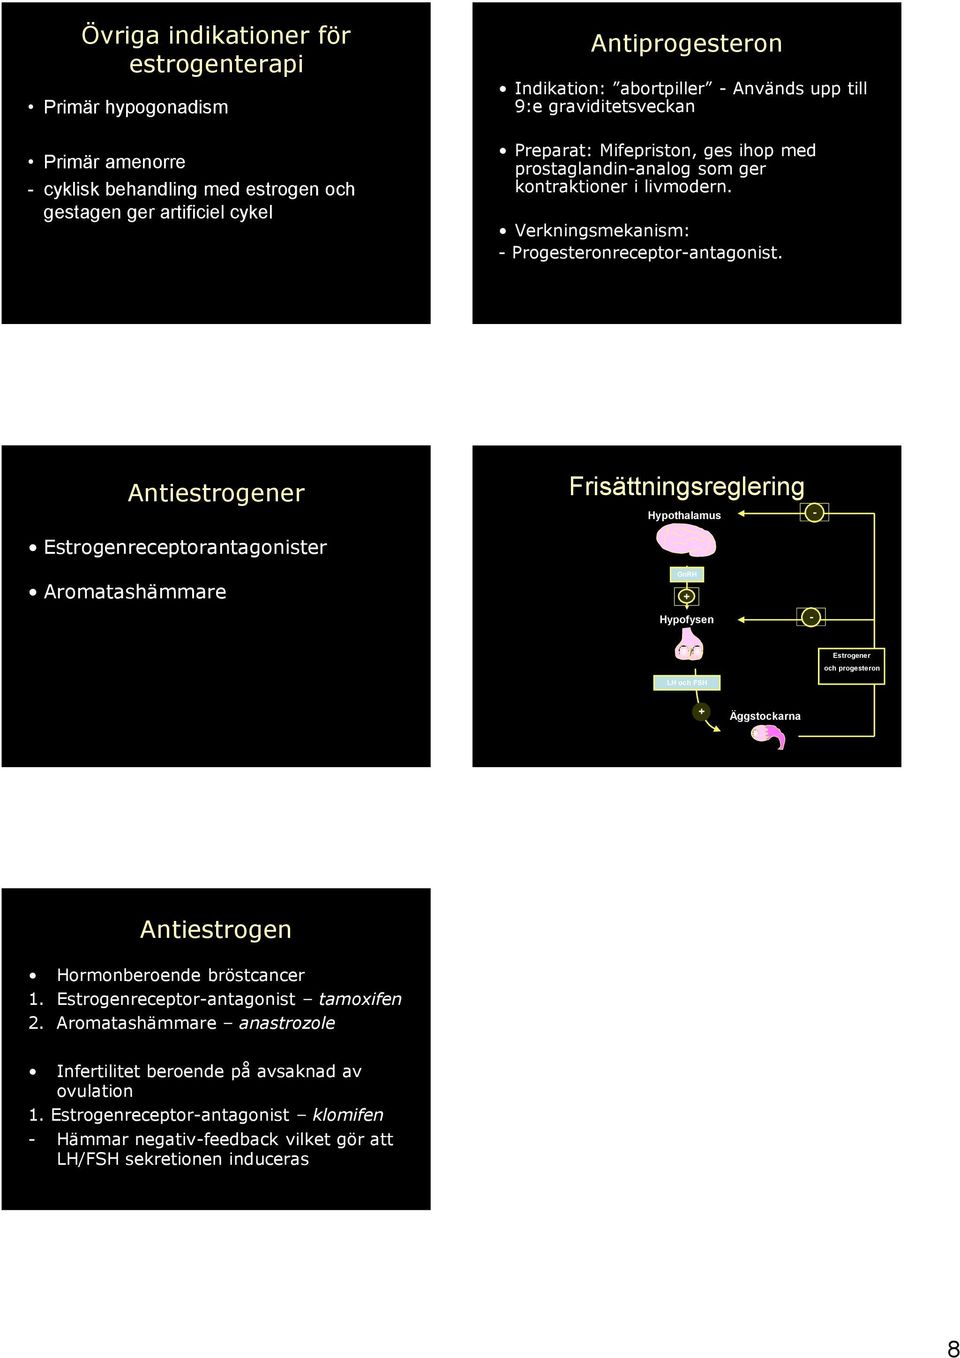 Antiestrogener Frisättningsreglering Hypothalamus - receptorantagonister Aromatashämmare GnRH + Hypofysen - er och progesteron LH och FSH + Äggstockarna Antiestrogen Hormonberoende bröstcancer